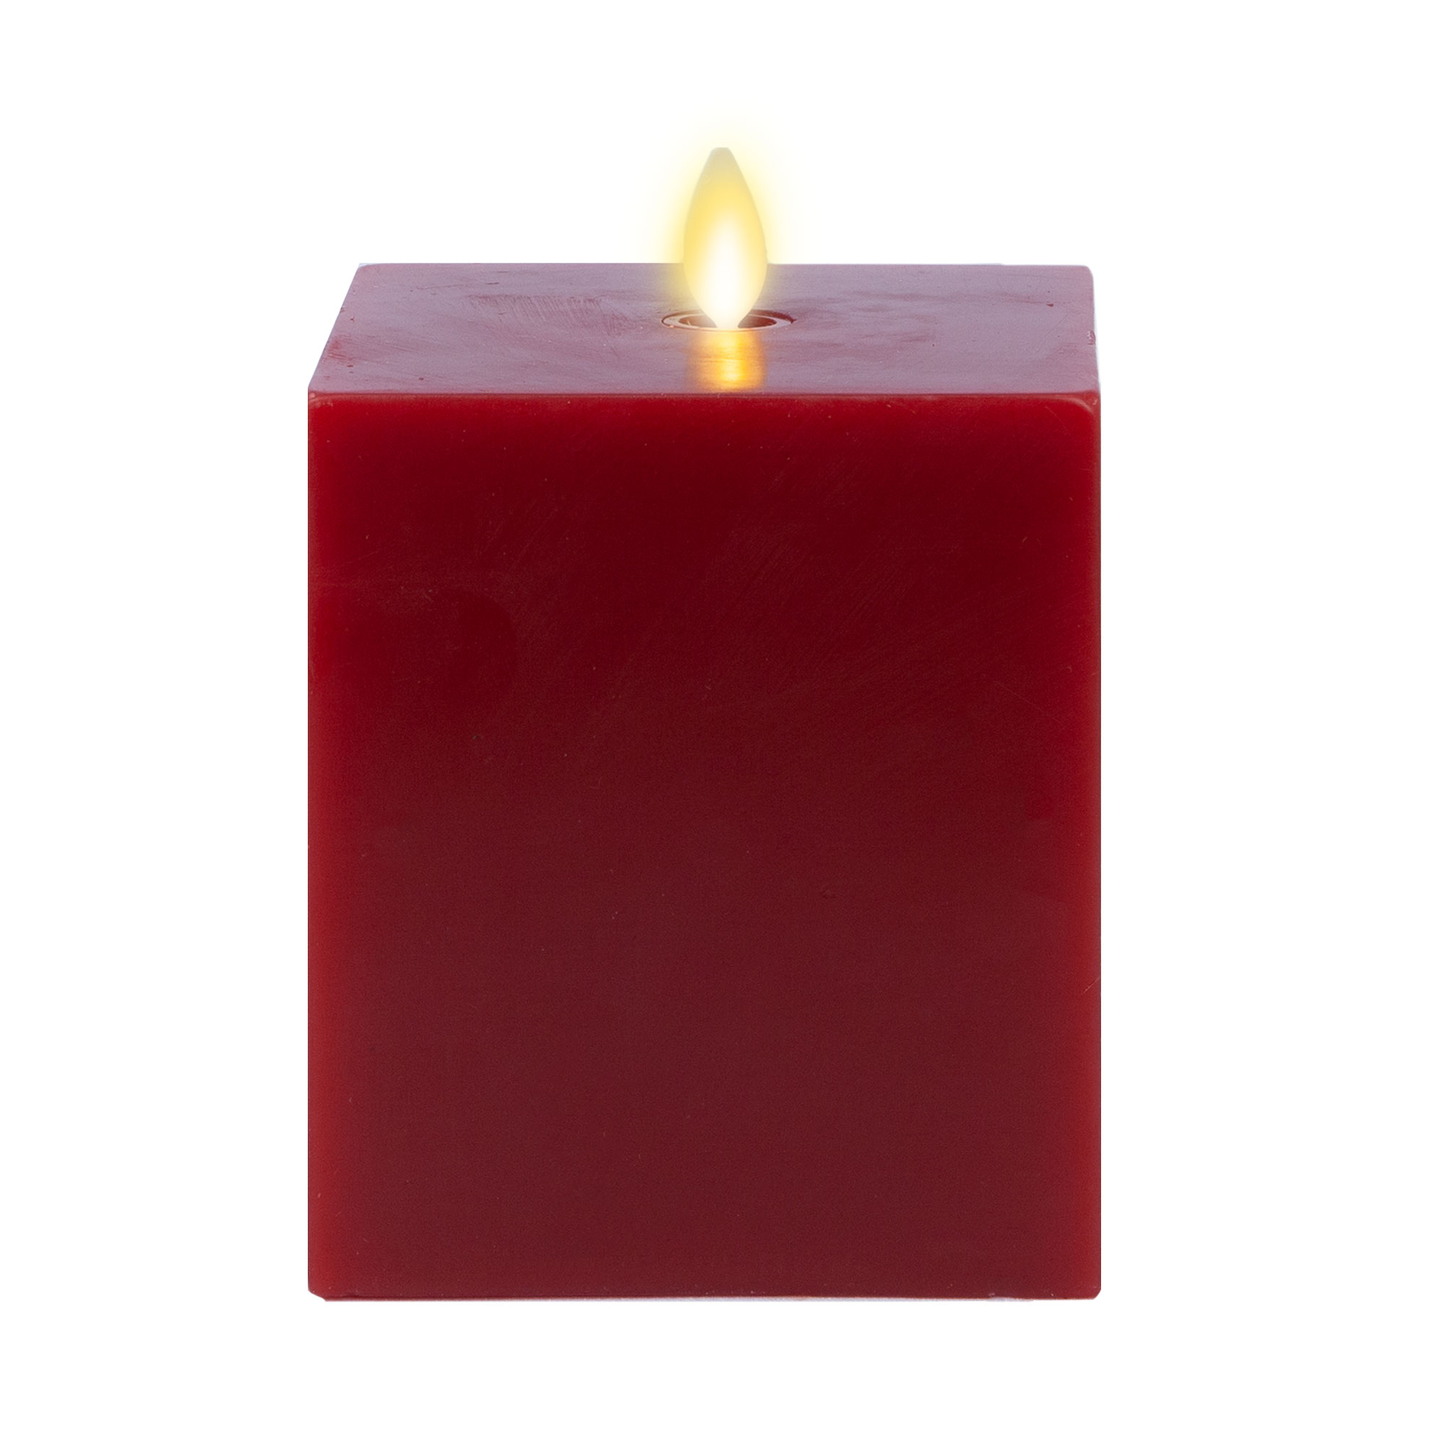 Burgundy Flameless Candle Square Pillar - Flat Top